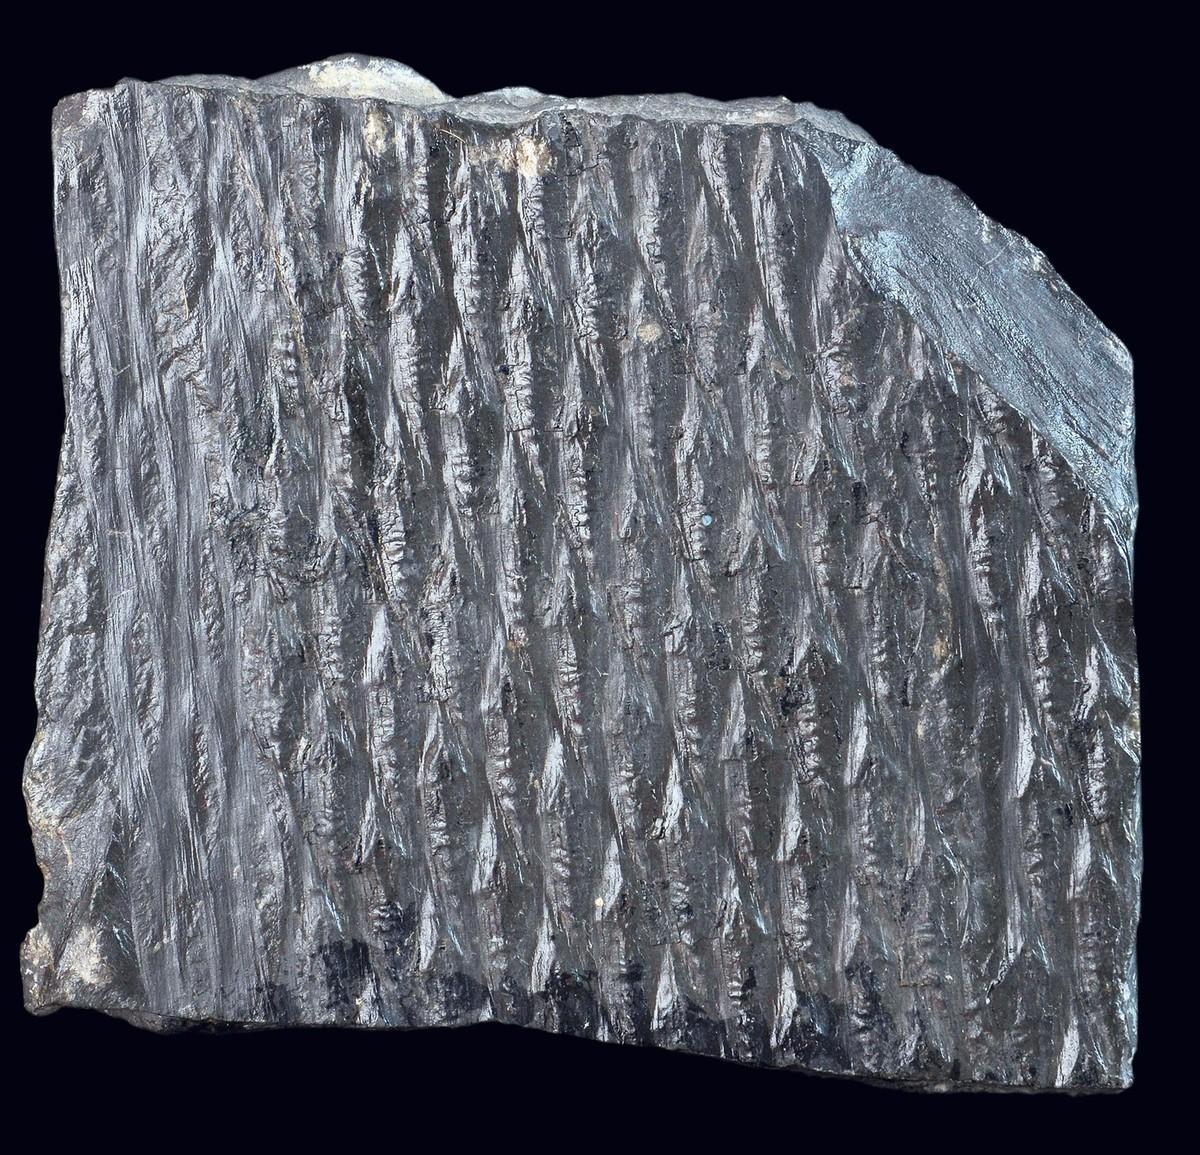 Un morceau de charbon contenant un fossile de lépidodendron (une fougère arborescente) daté du Carbonifère.